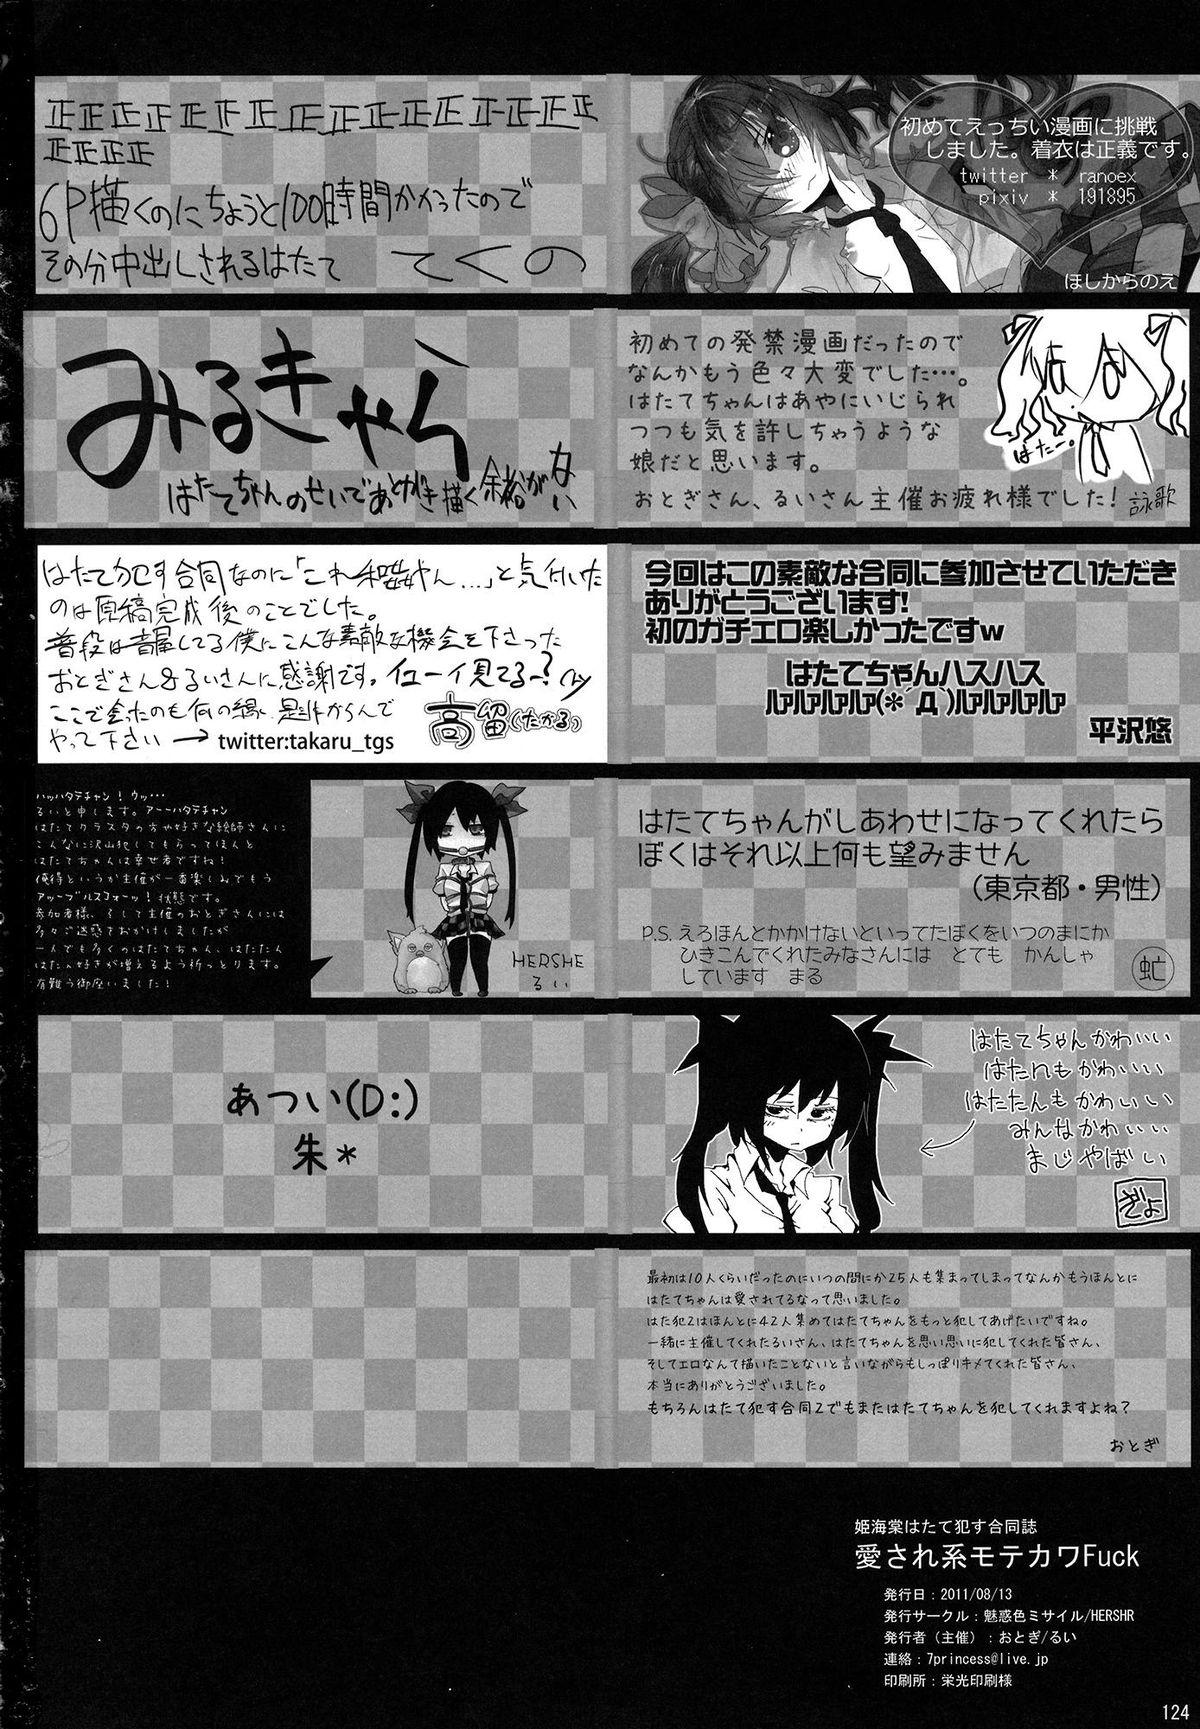 Sissy (C80) [Miwaku-iro Missile, HERSHR (Otogi, Rui)] Himekaidou Hatate Okasu Goudou - Aisare-kei Motekawa Fuck! (Touhou Project) - Touhou project Hot Girls Getting Fucked - Page 125